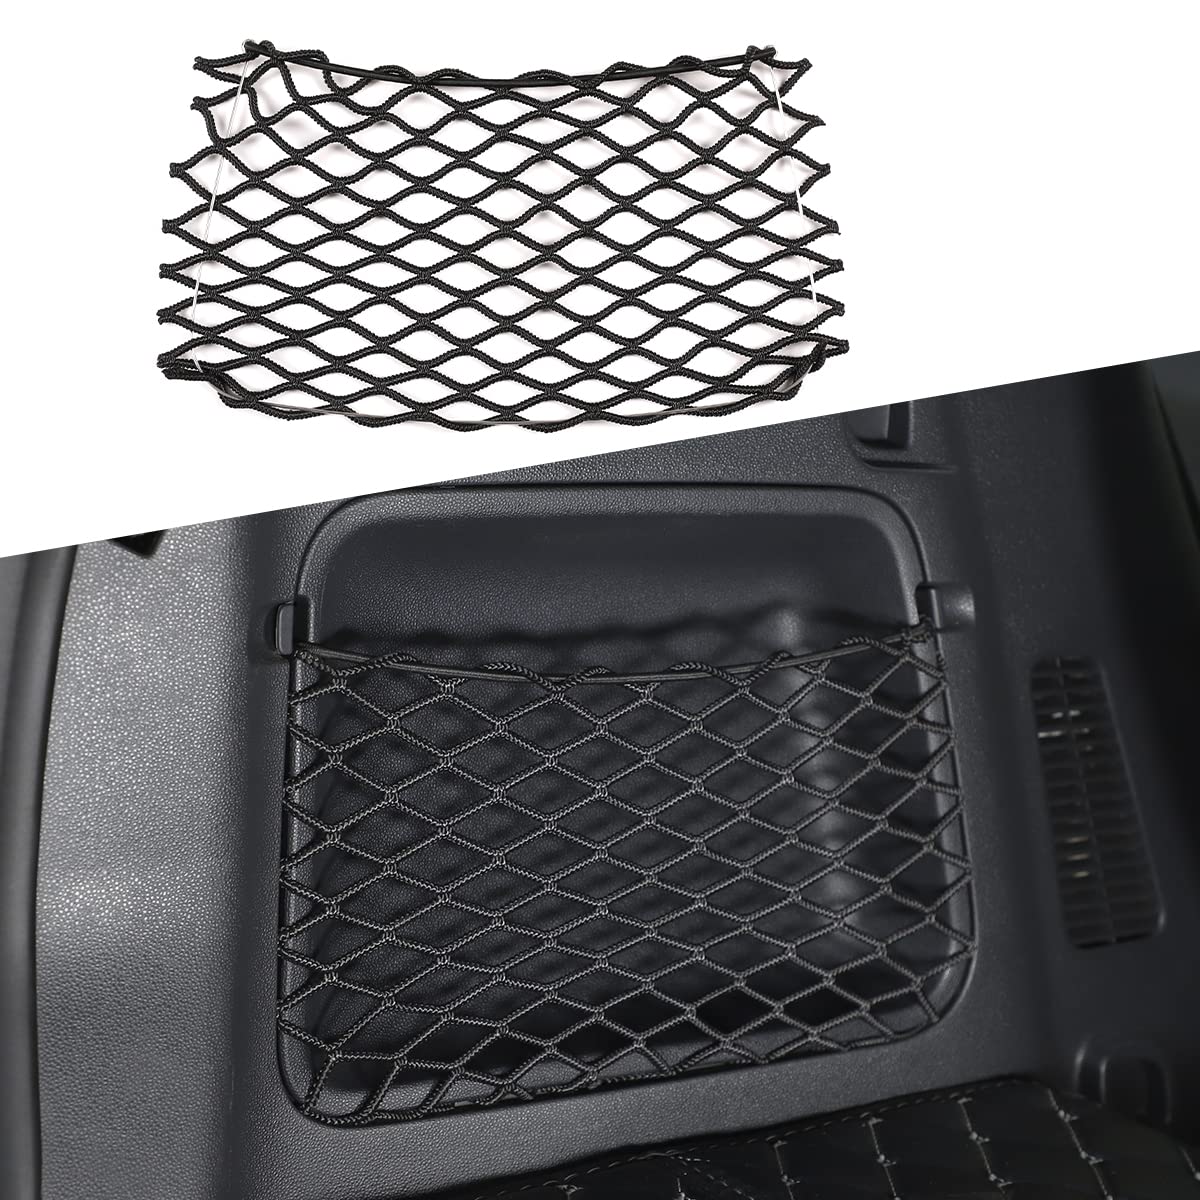 DIYUCAR Auto-Rückseite Kofferraum Seitenaufbewahrung Tasche Organizer Elastische Schnur Netz Tasche Netz Tasche Netz Für Mercedes-Benz Smart 451 Fortwo 2009-2015 von DIYUCAR